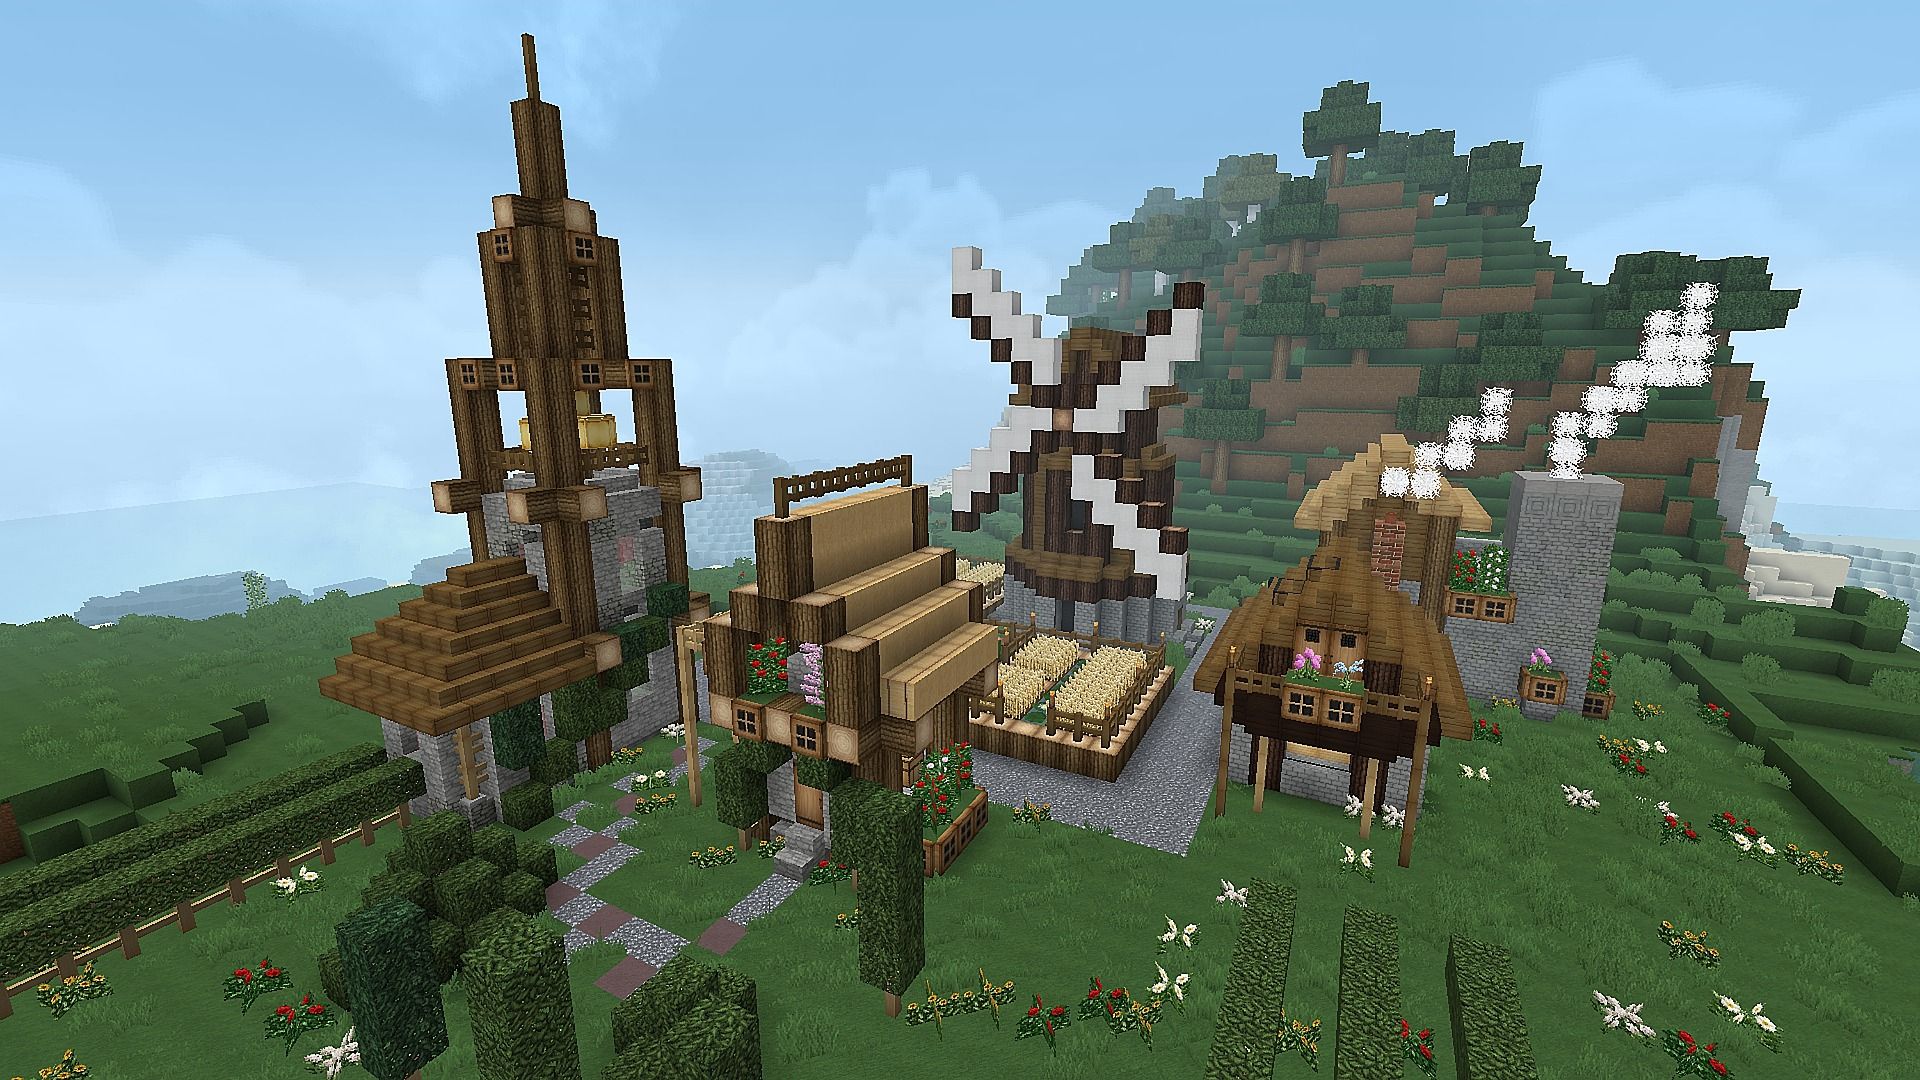 A Minecraft village